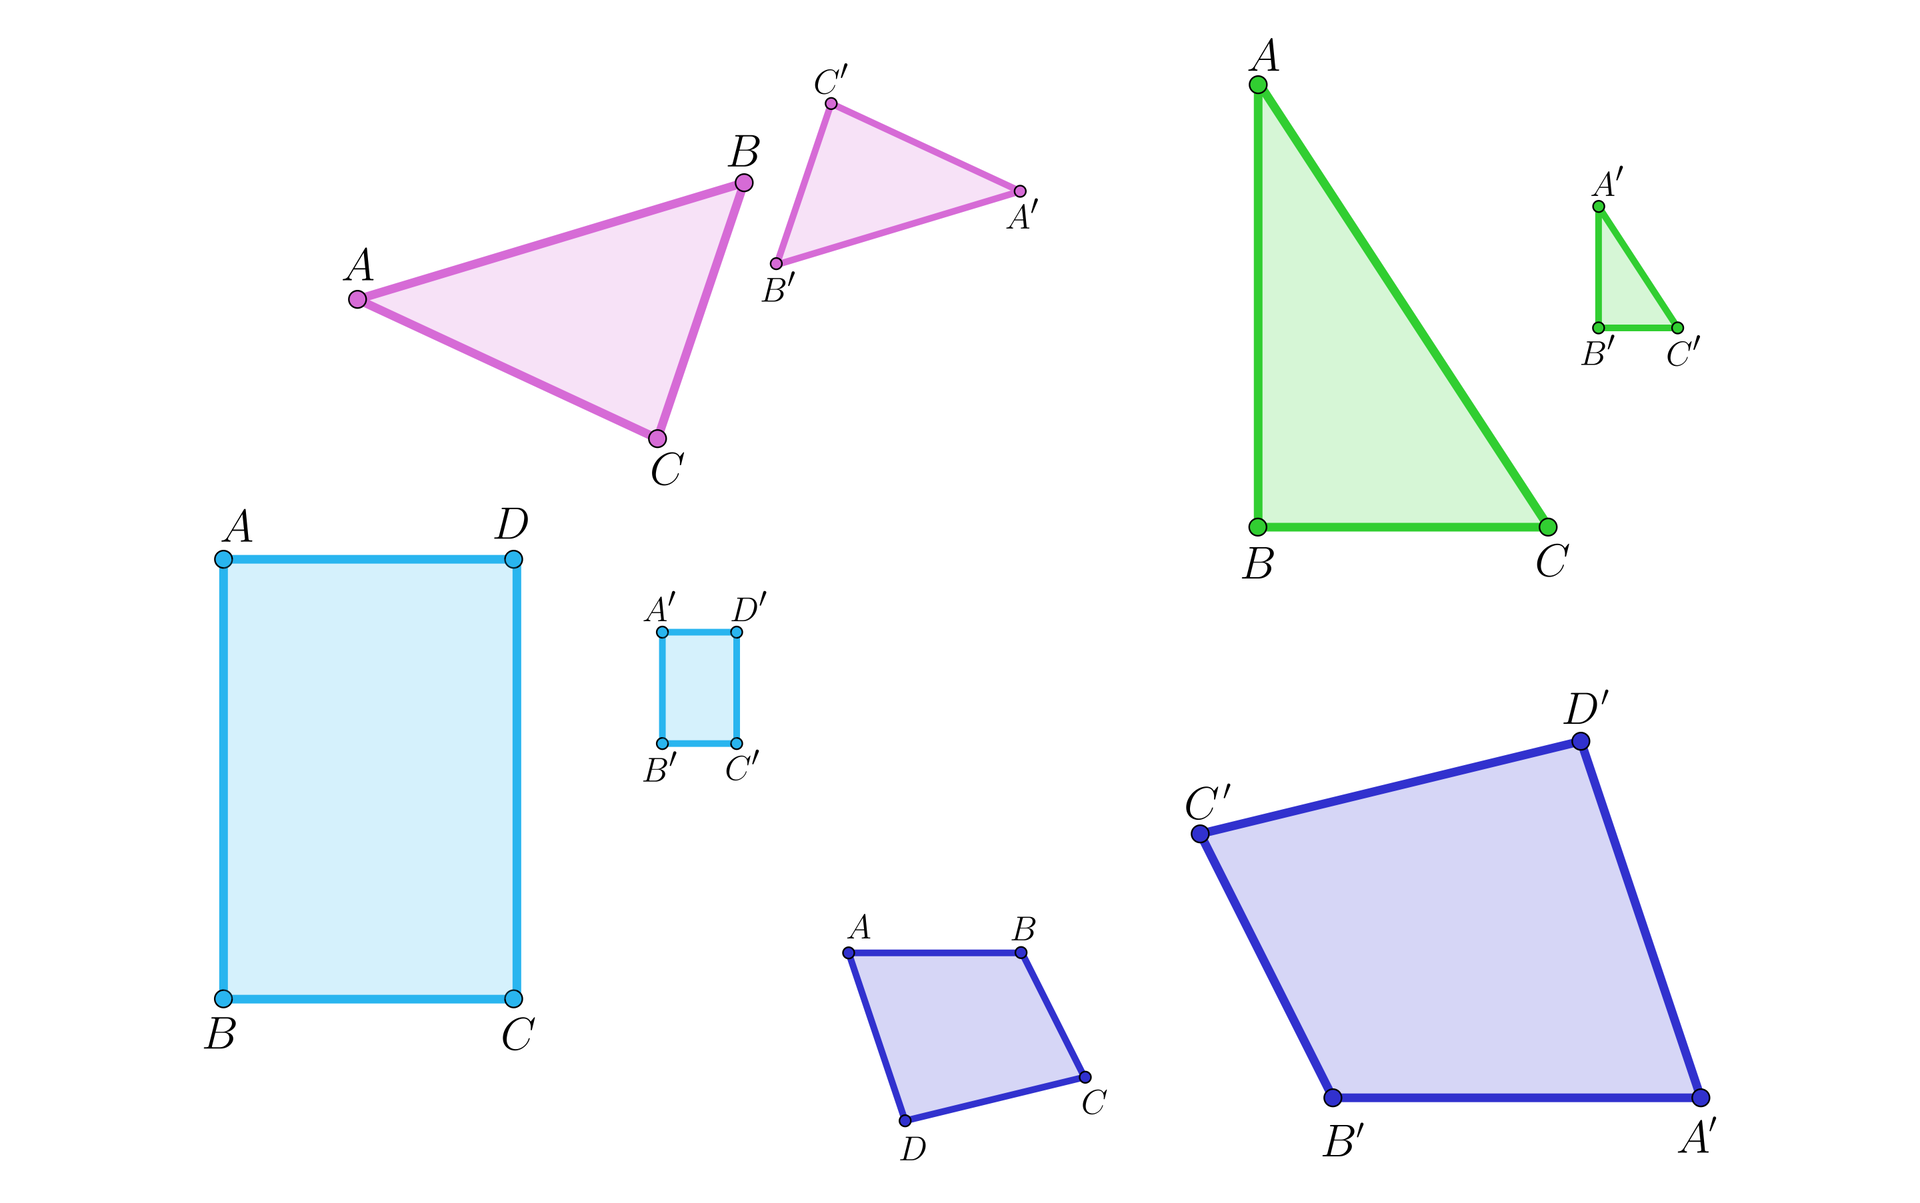 Ilustracja przedstawia cztery pary figur podobnych, czyli takich, które zachowują proporcje między bokami mimo różnych rozmiarów. Na rysunku mamy podobne: prostokąty, trójkąty różnoboczne, prostokątne oraz czworokąty nieforemne.